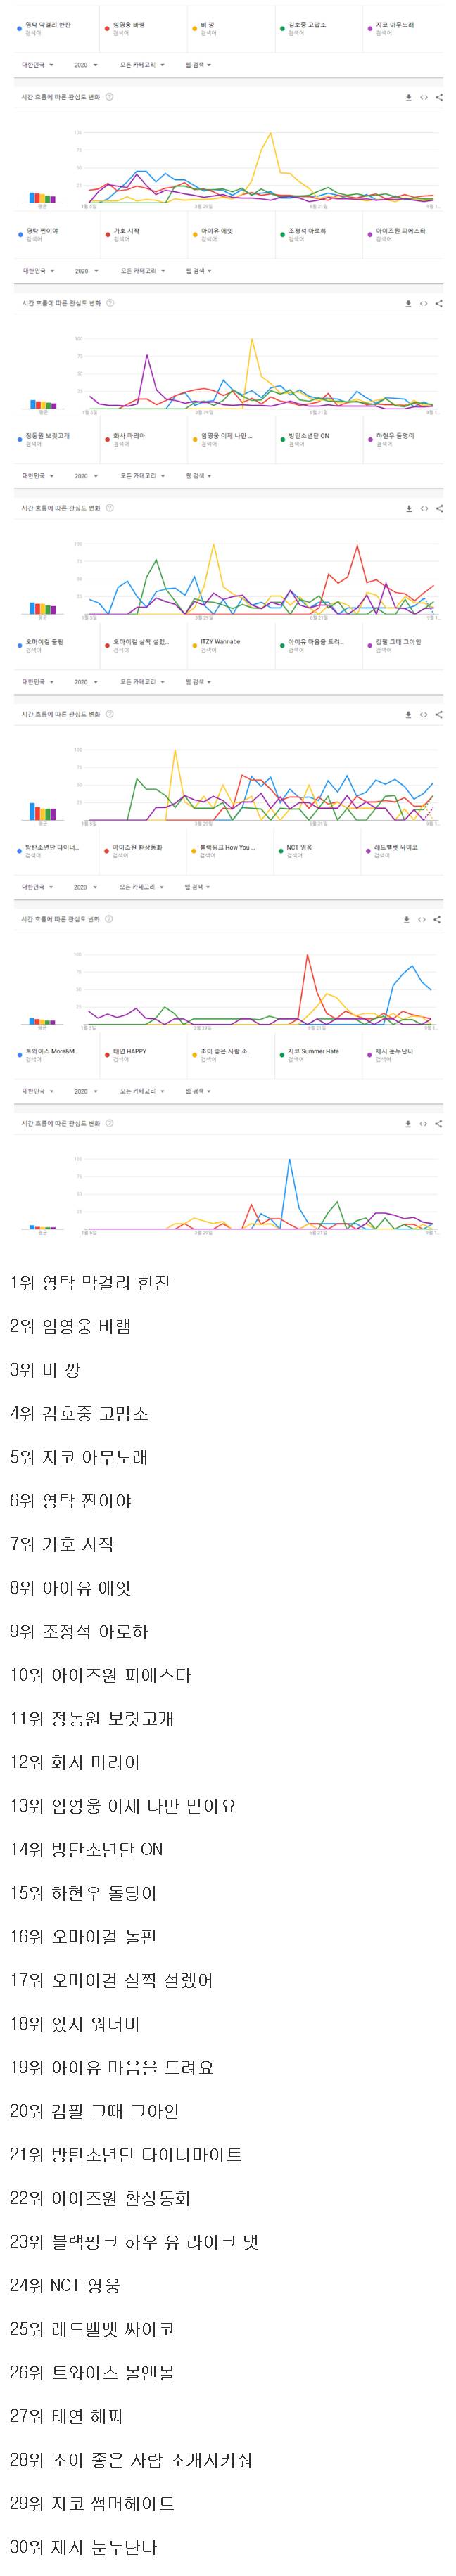 2020년 한국에서 가장 많이 검색된 노래 순위.JPG | 인스티즈